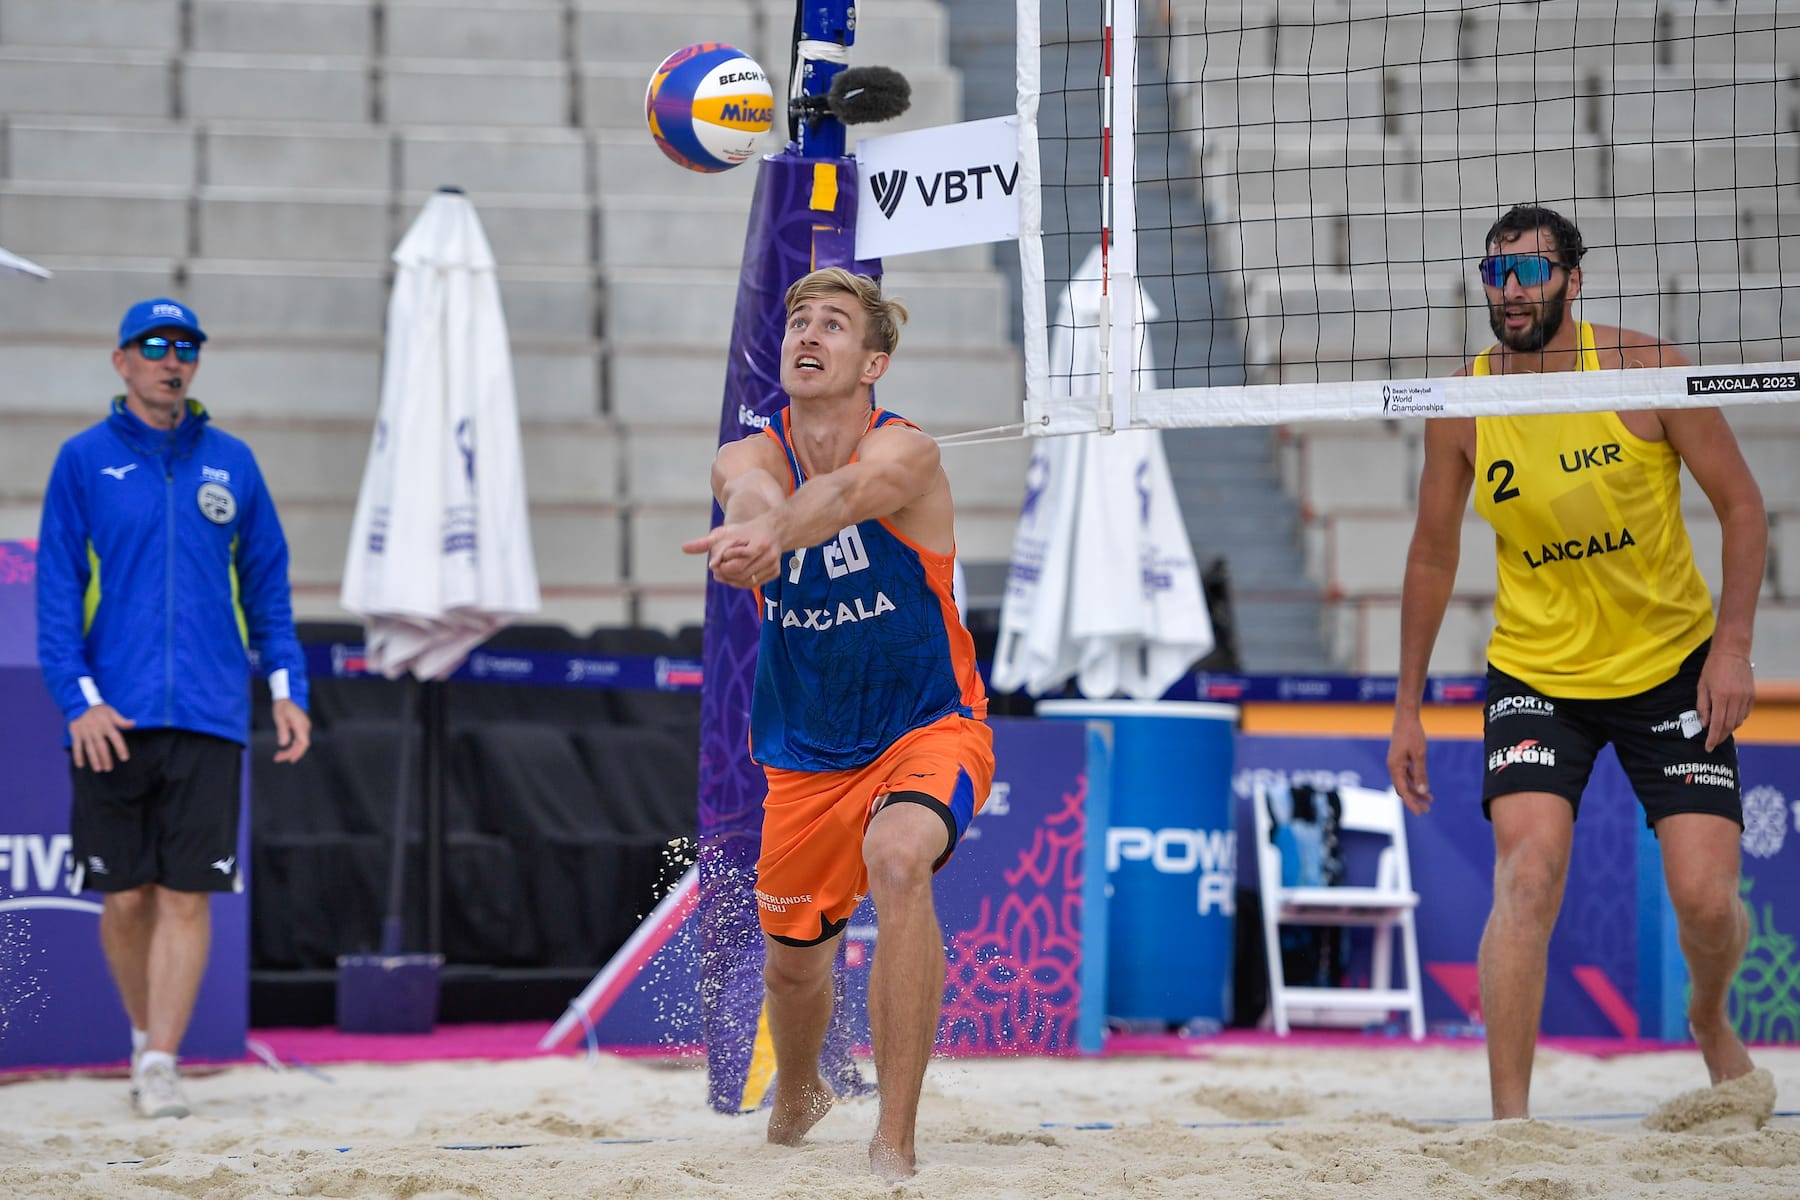 Steven van de Velde plays volleyball